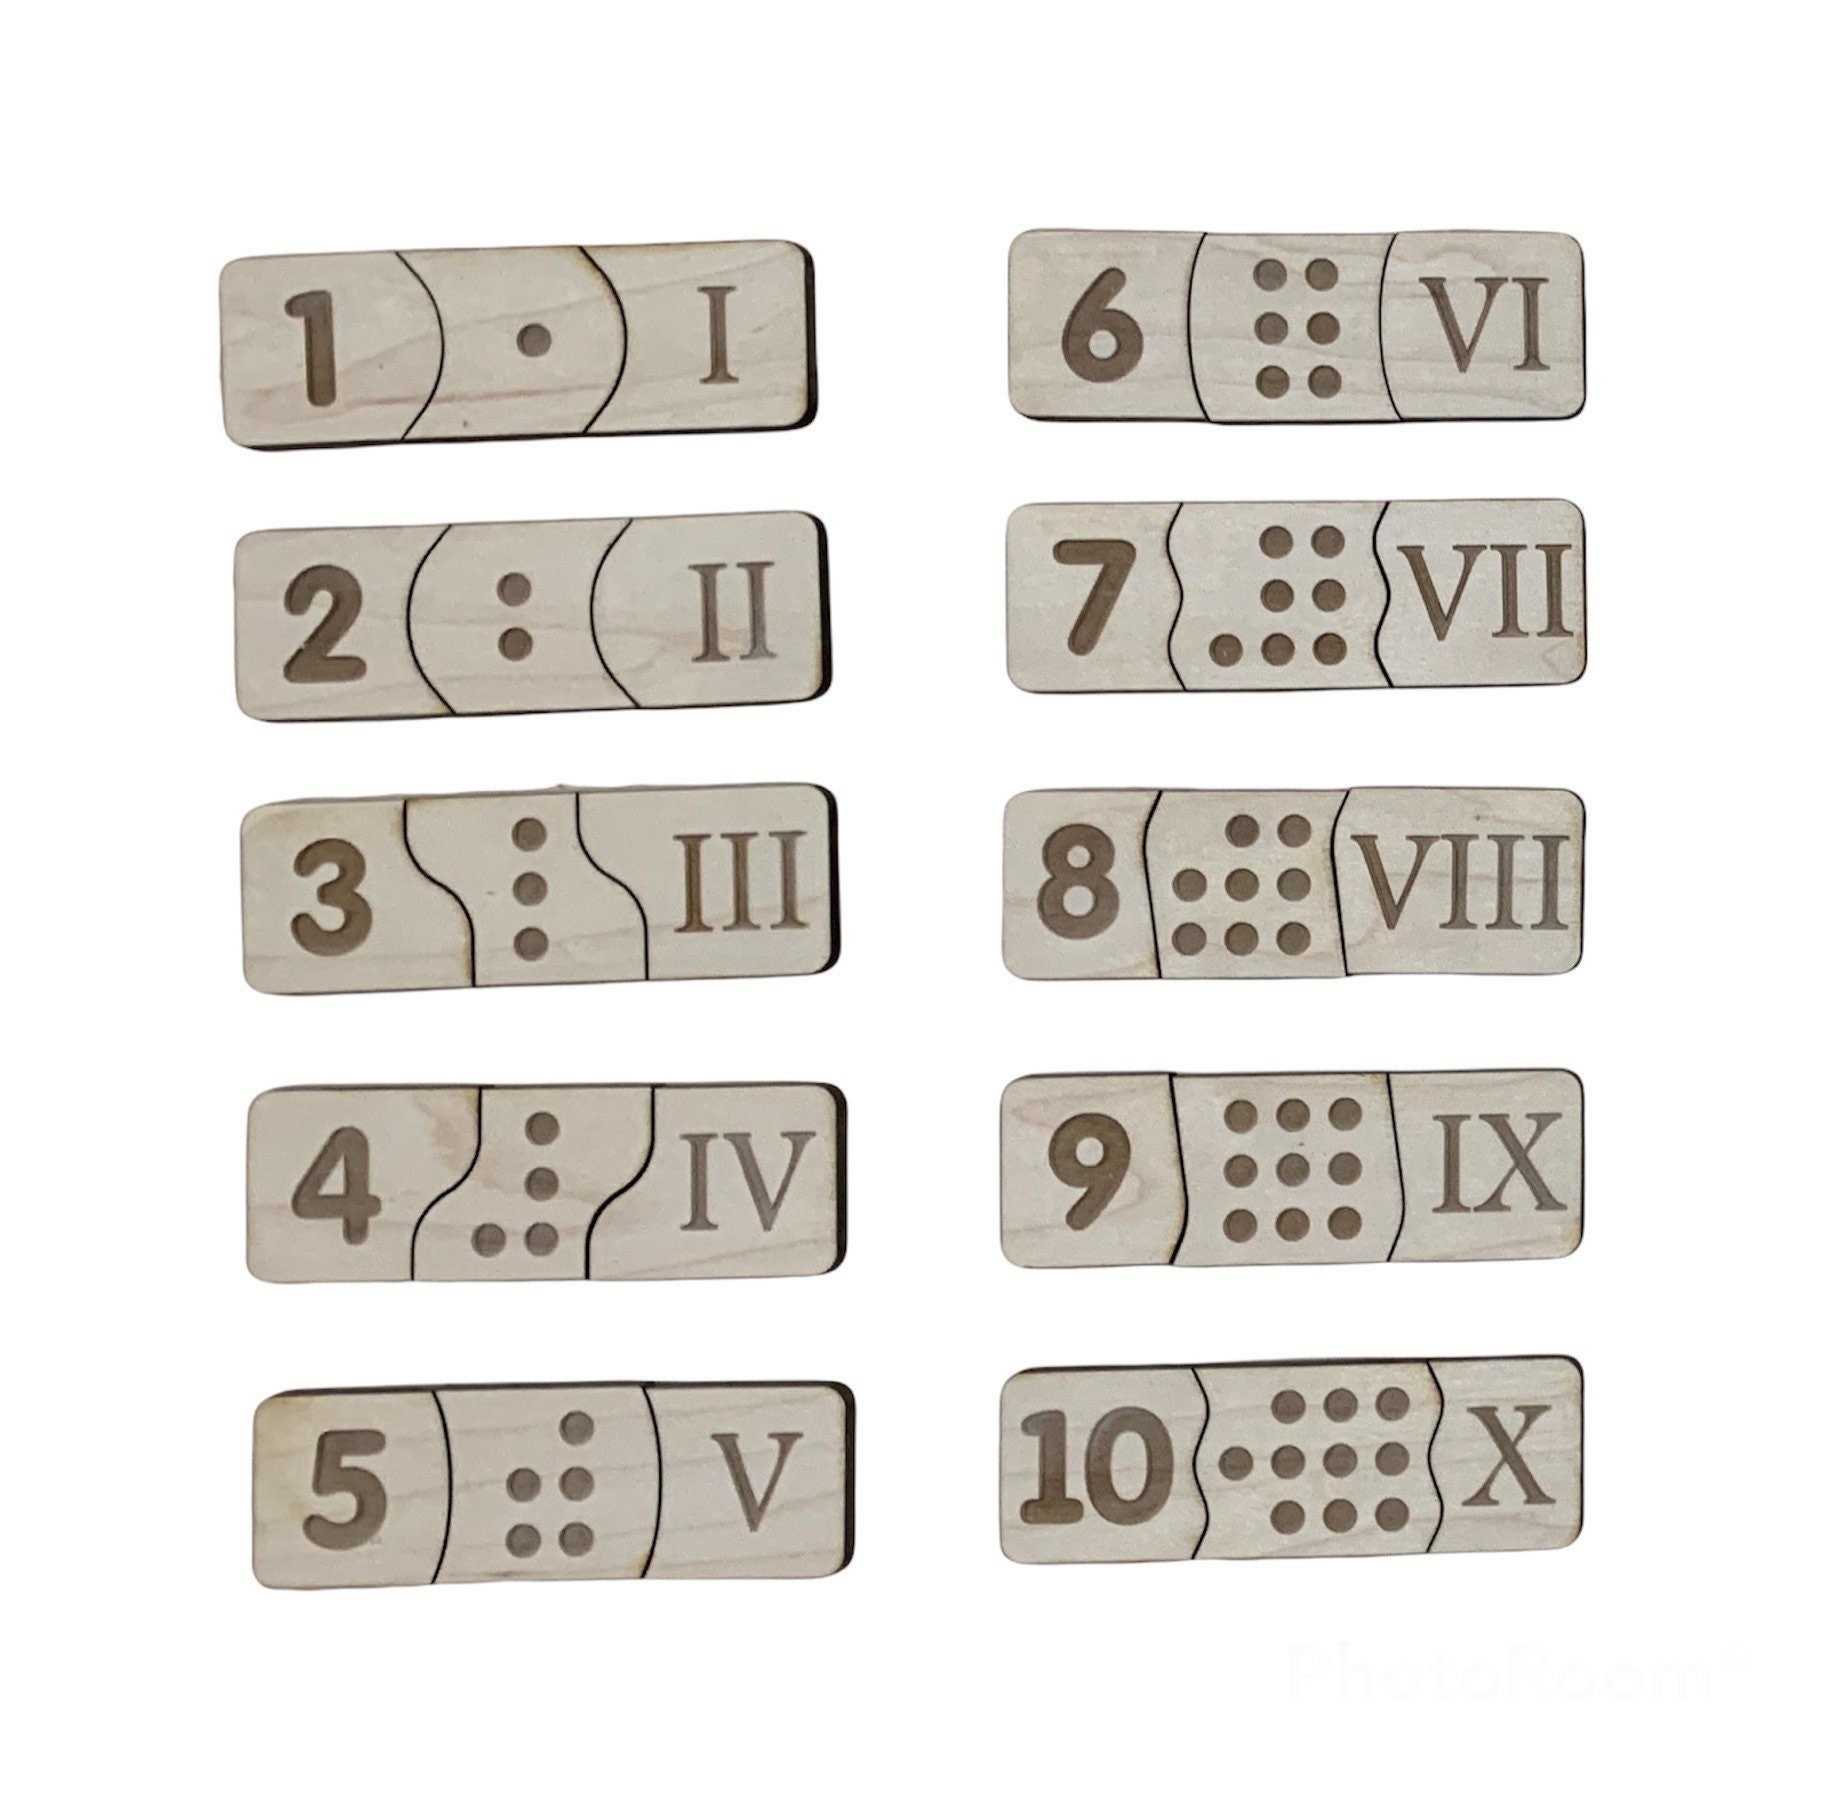 Juego de mesa casero para que los niños aprendan los números romanos